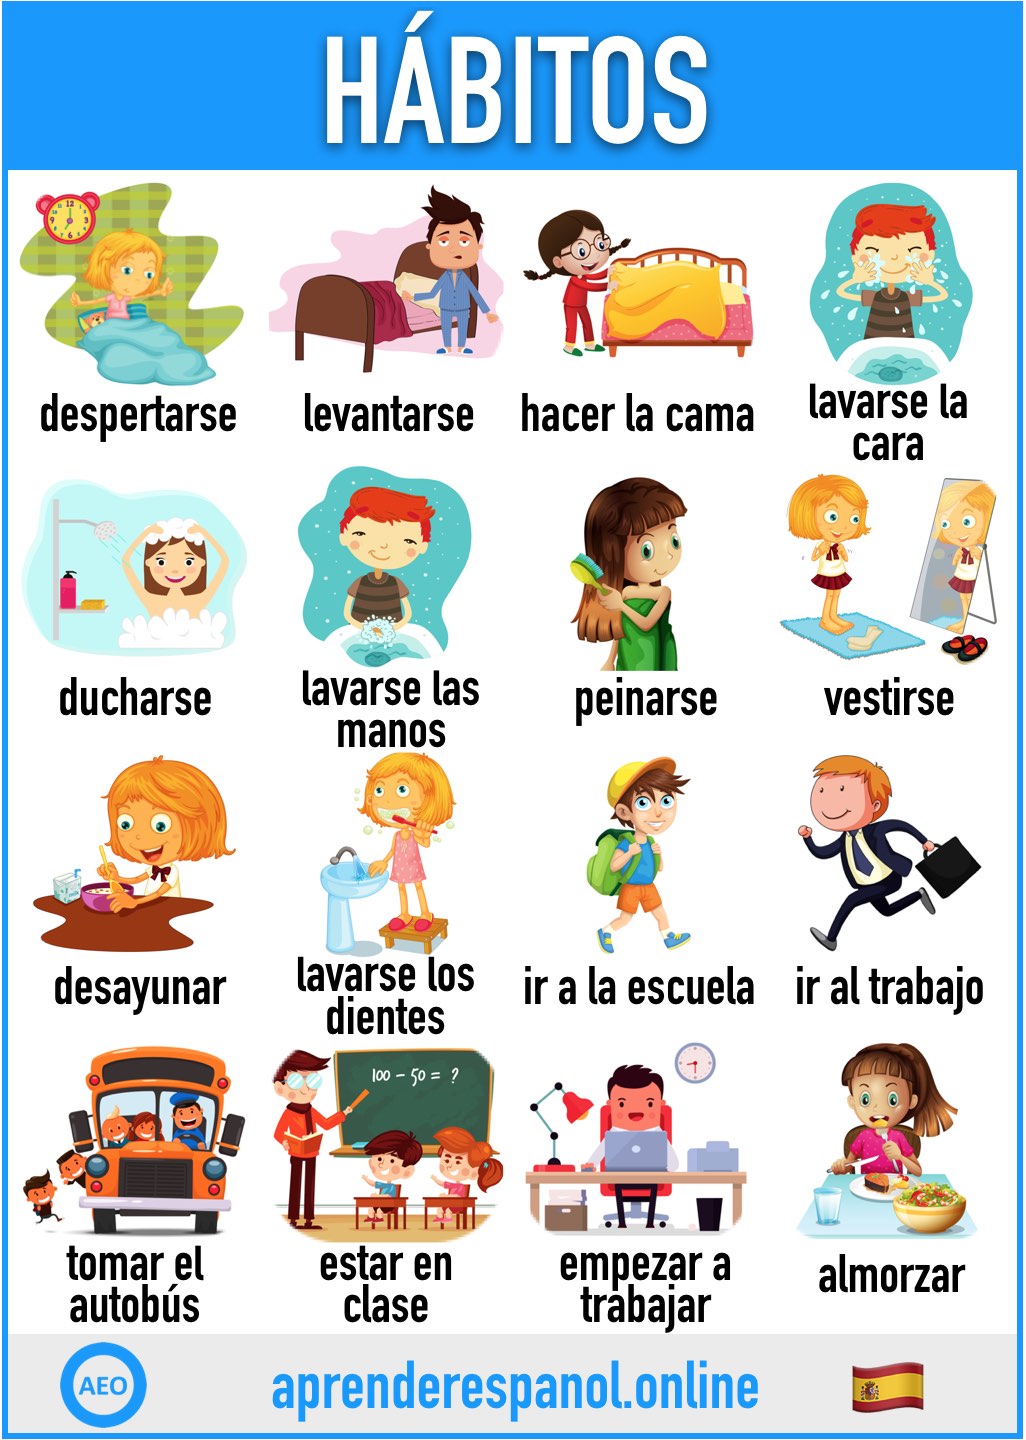 hábitos en español - aprender español online - vocabulario de los hábitos en español